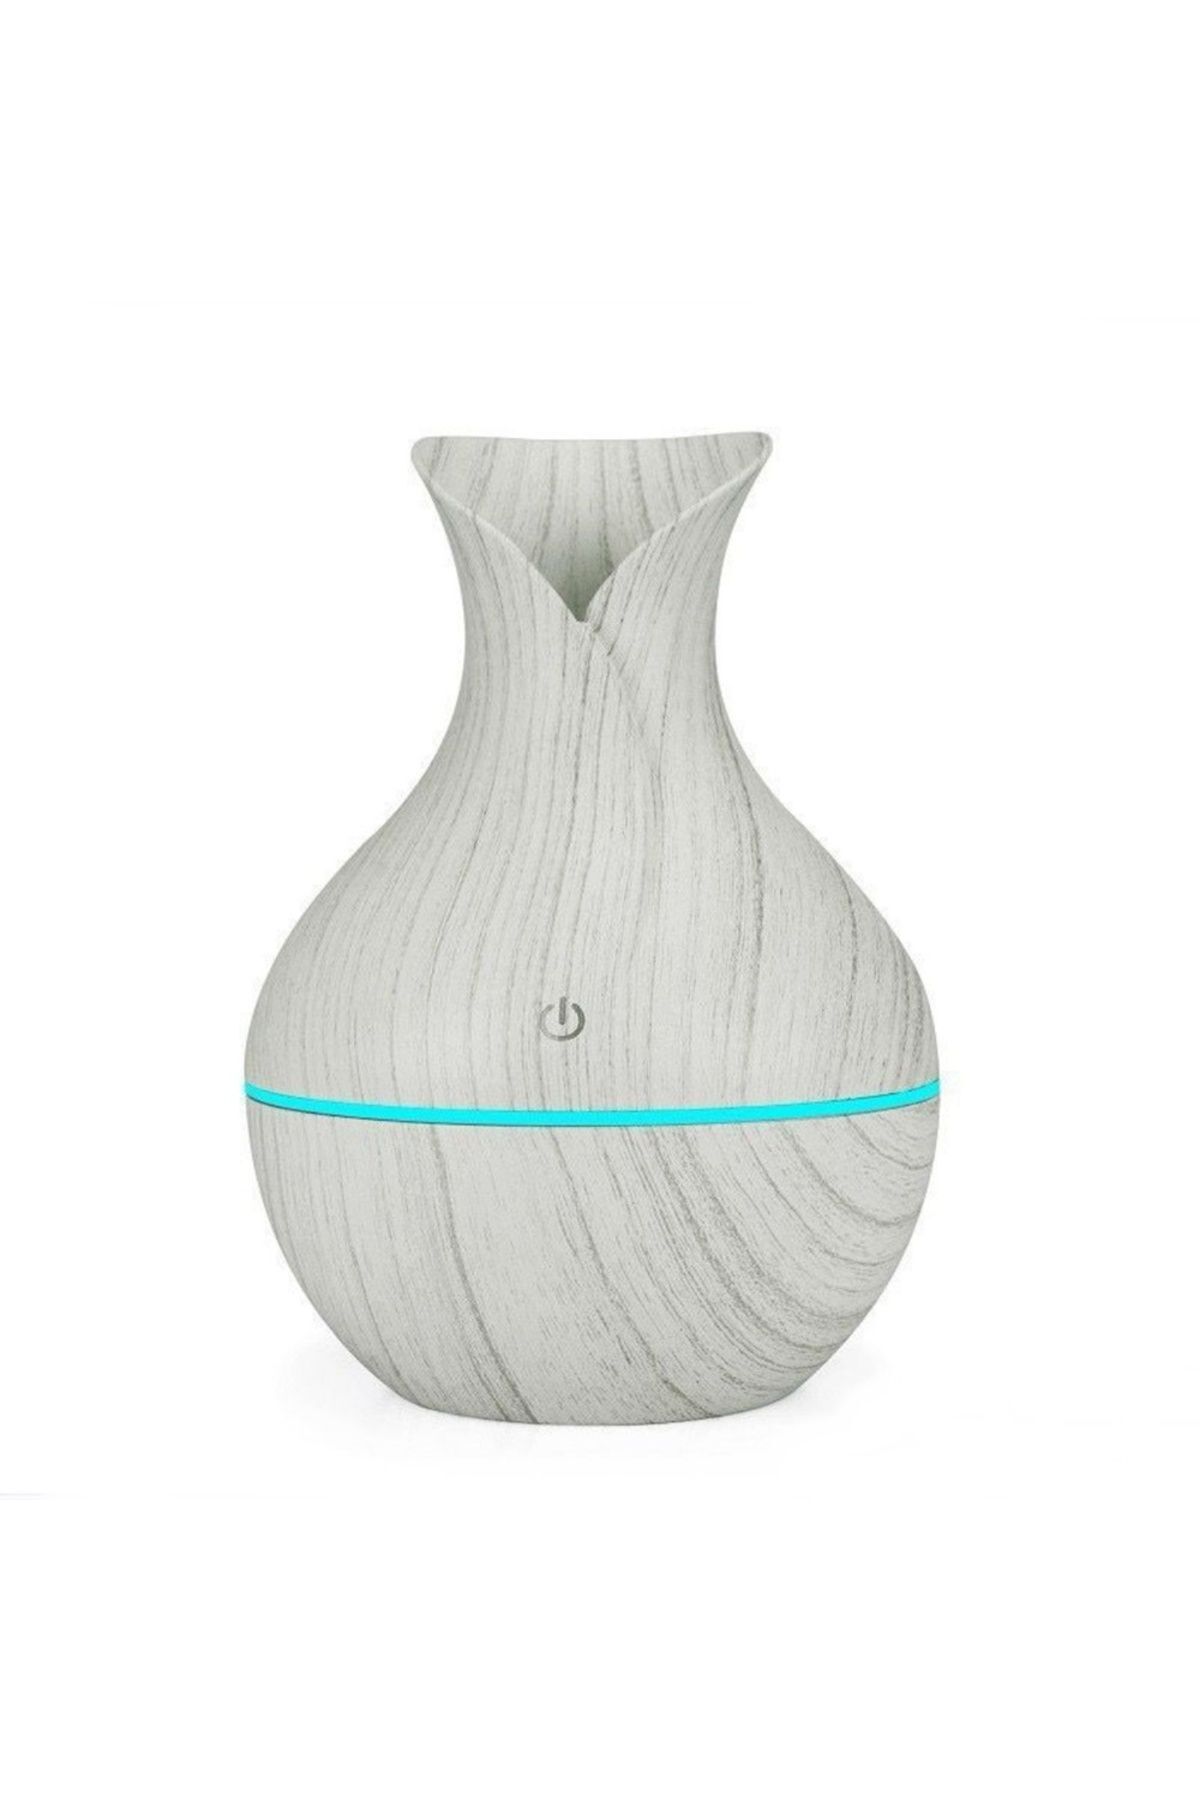 Reidan Beyaz Renk Vazo Modeli Aroma Terapi Oda Hava Nemlendirici 7 Renk Işıklı Ultrasonik Ahşap Görünüm Led